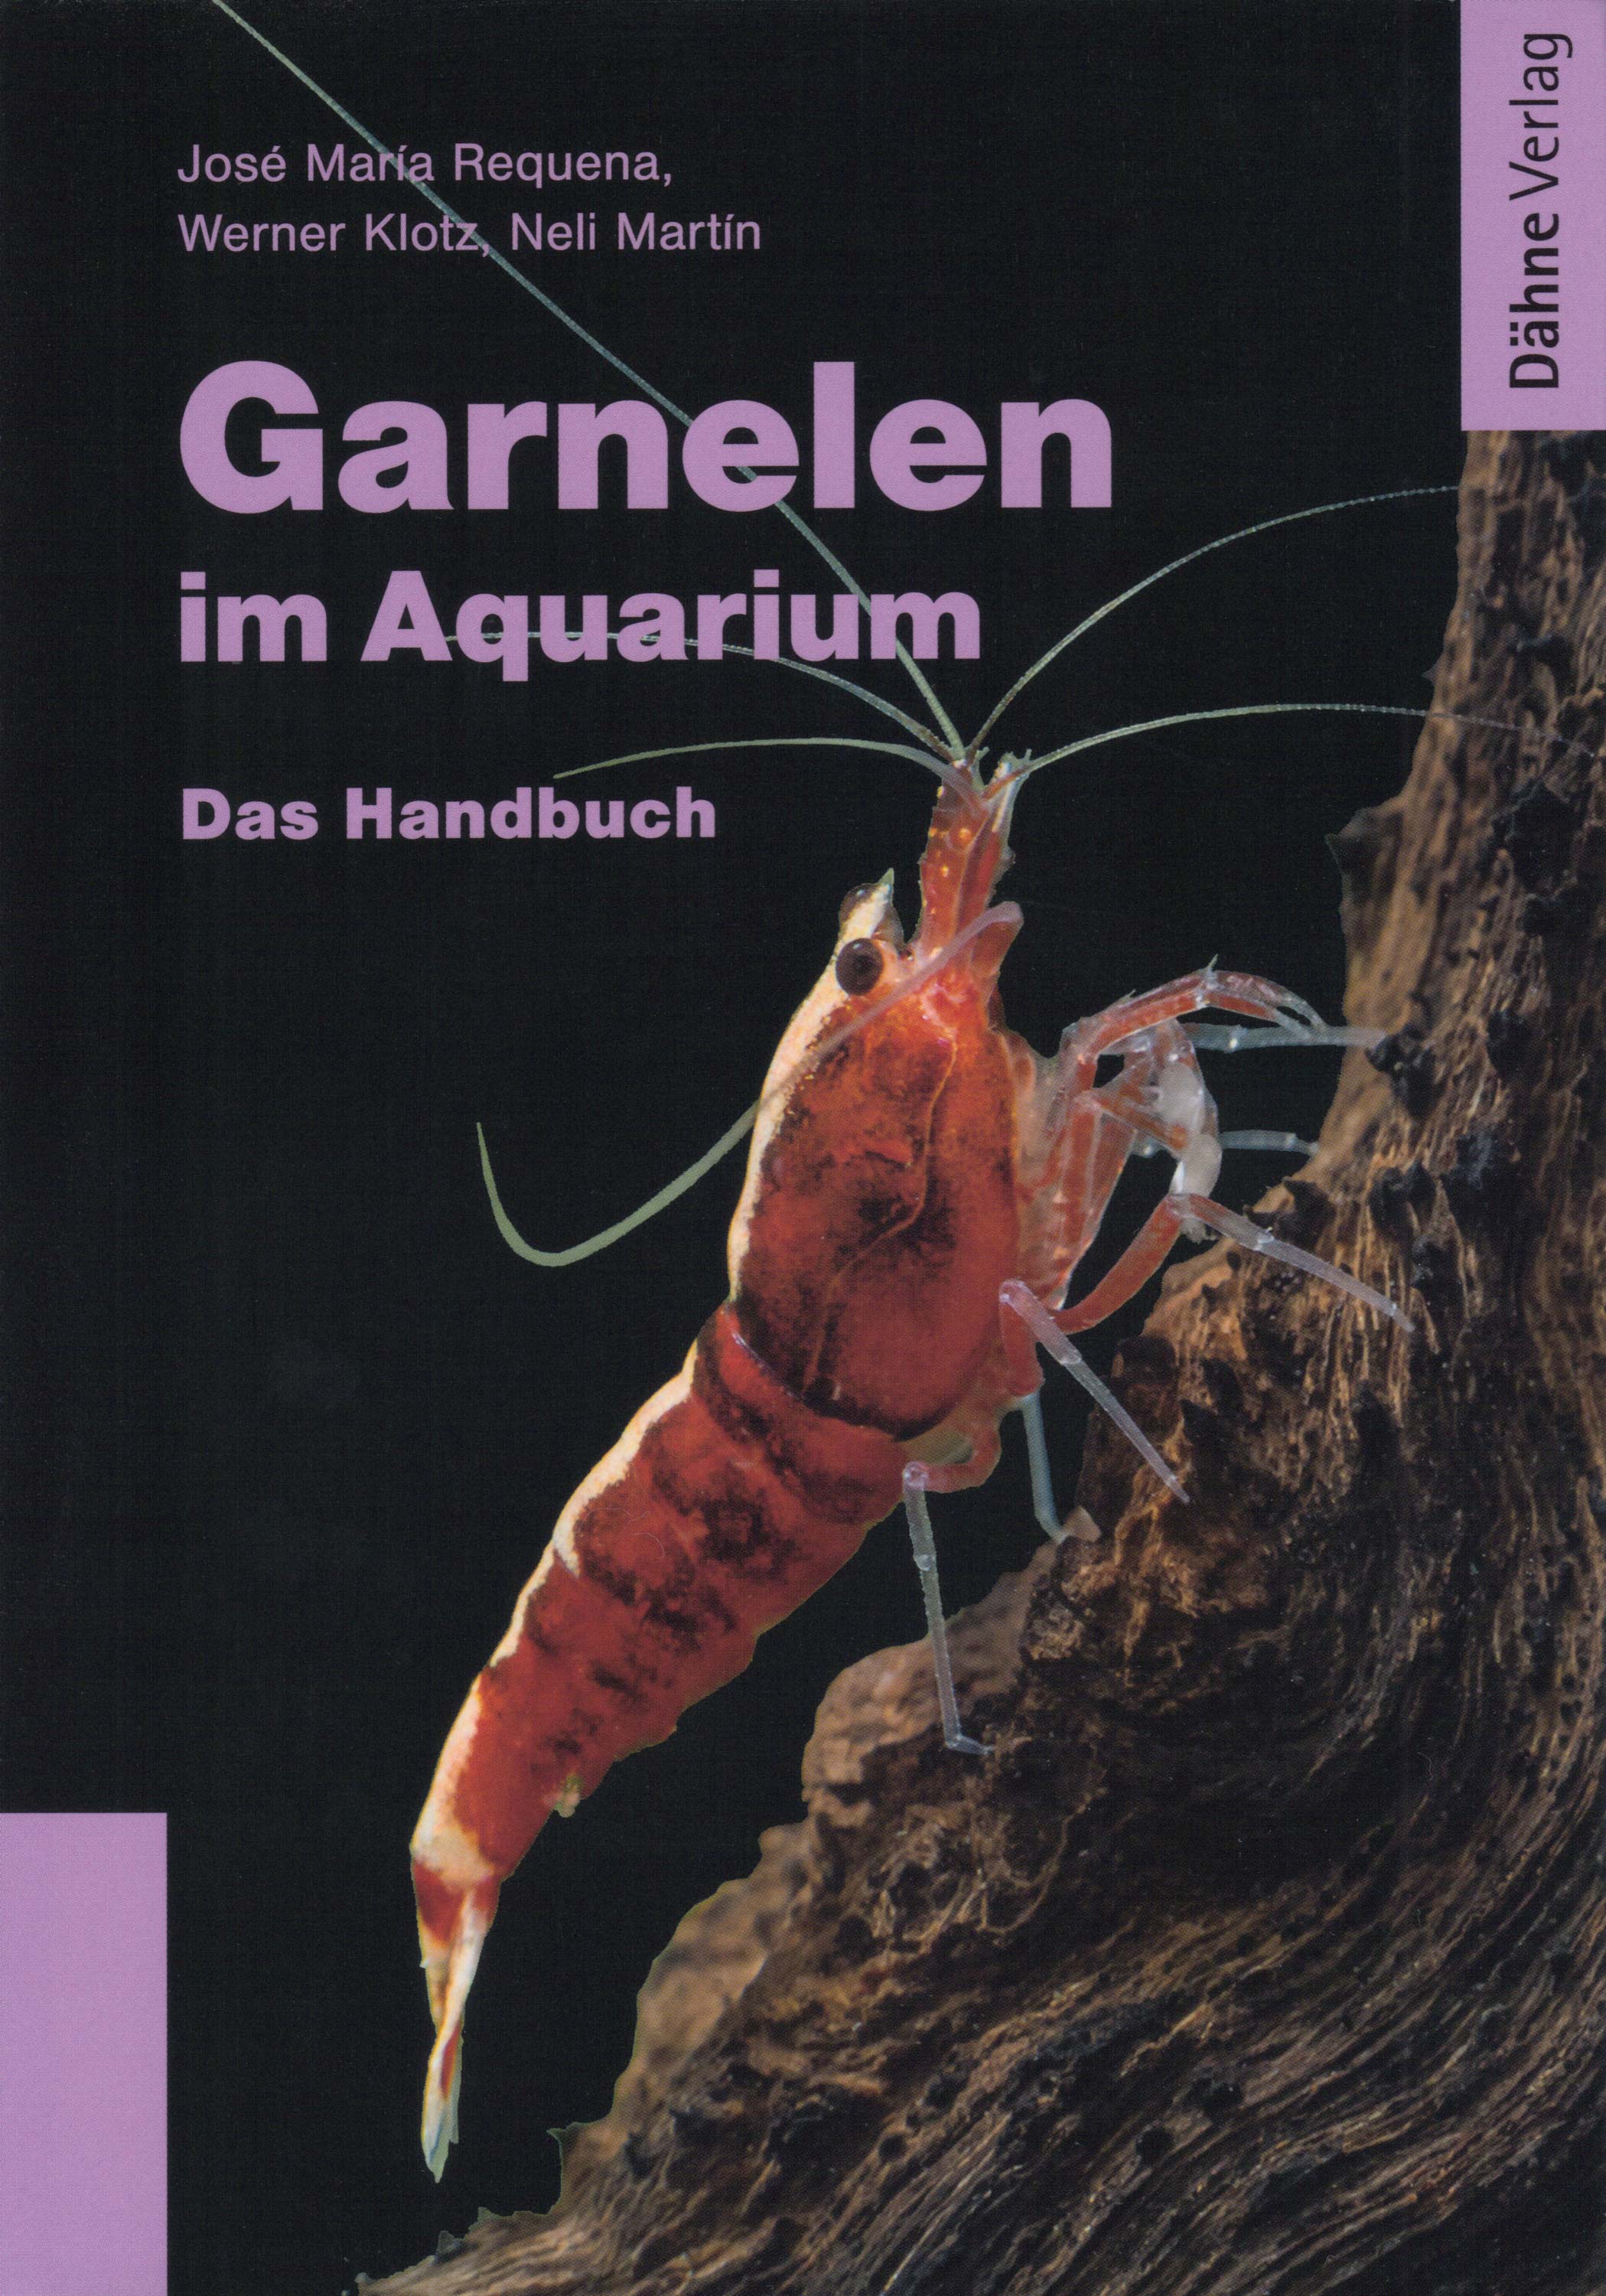 Garnelen im Aquarium - Das Handbuch